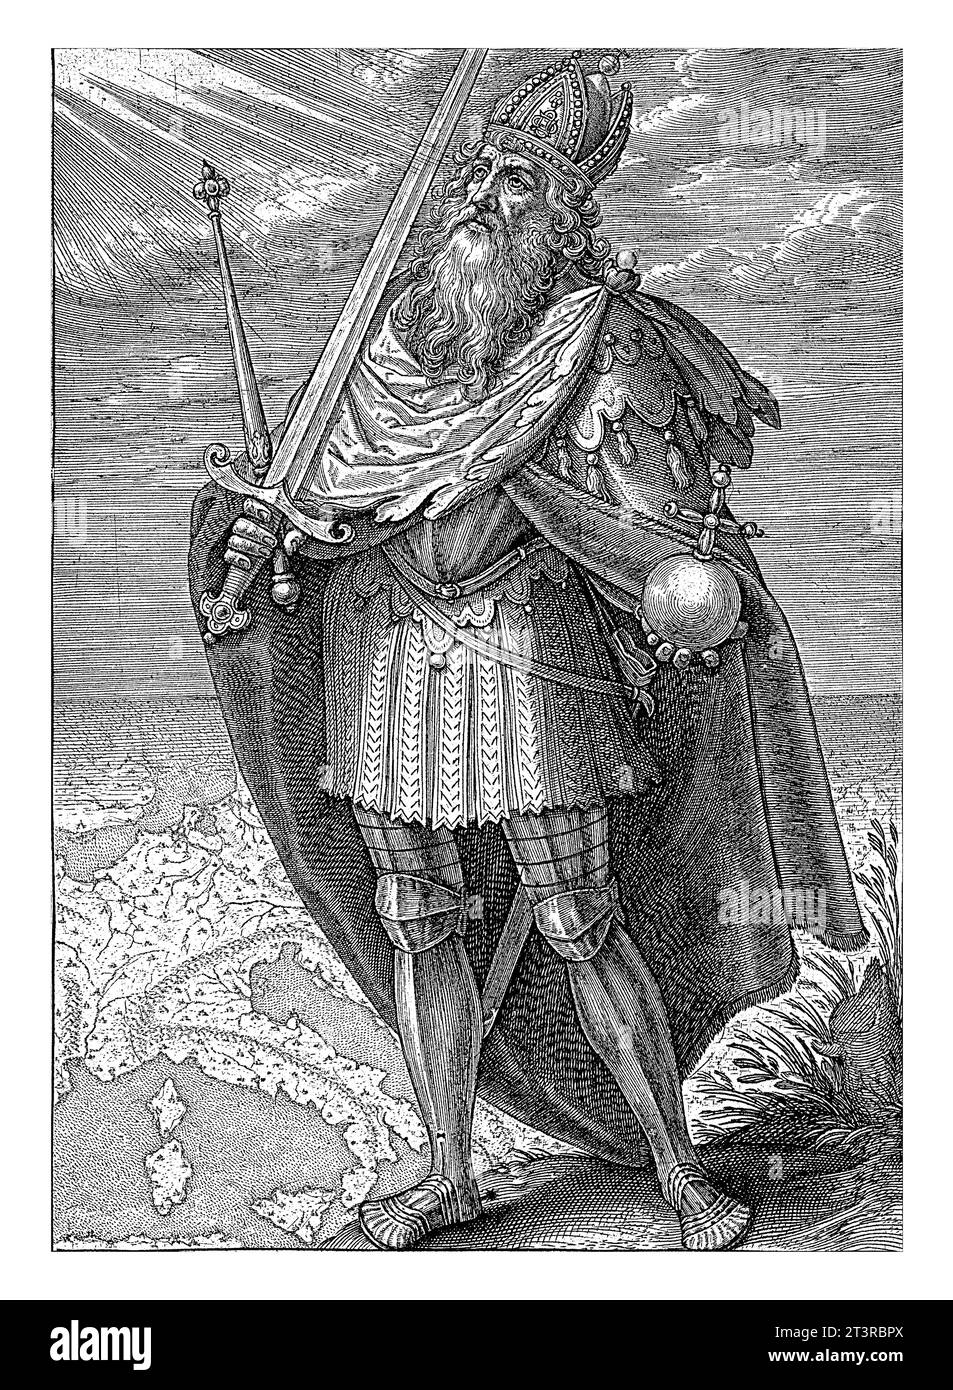 Landschaft mit Karl dem Großen, Hieronymus Wierix, 1563 - vor 1619 Landschaft mit Kaiser Karl dem Großen in Rüstung. Er hält eine Kugel, ein Schwert und ein Kommando Stockfoto